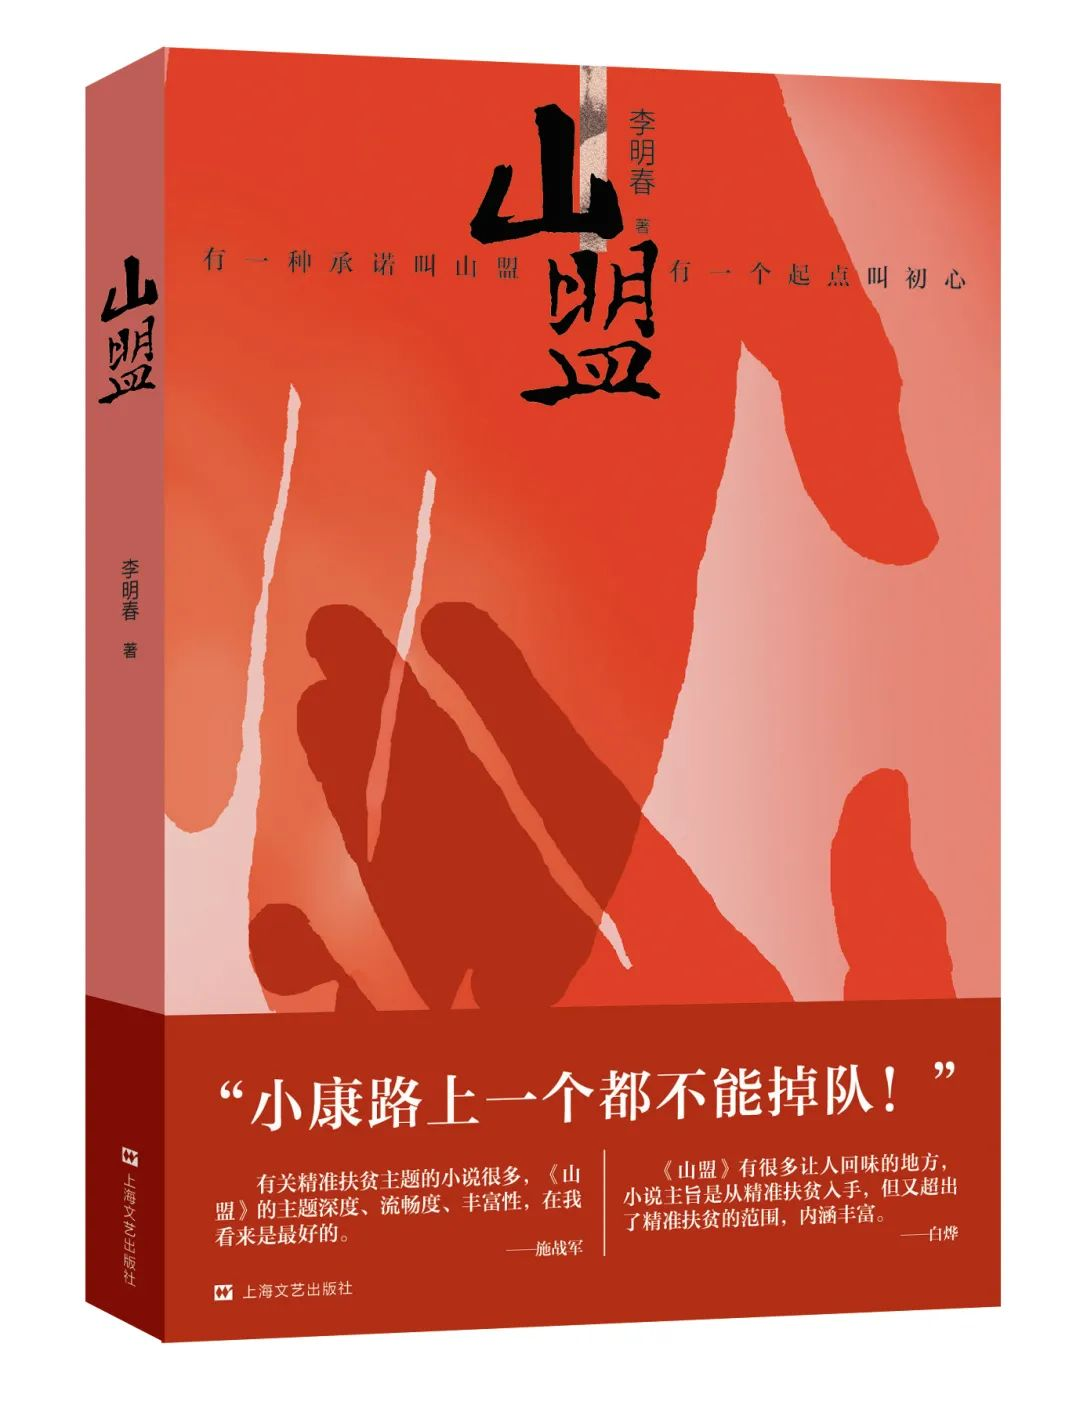 李明春长篇小说《山盟》(蒙古文版)入选第23届输出版优秀图书